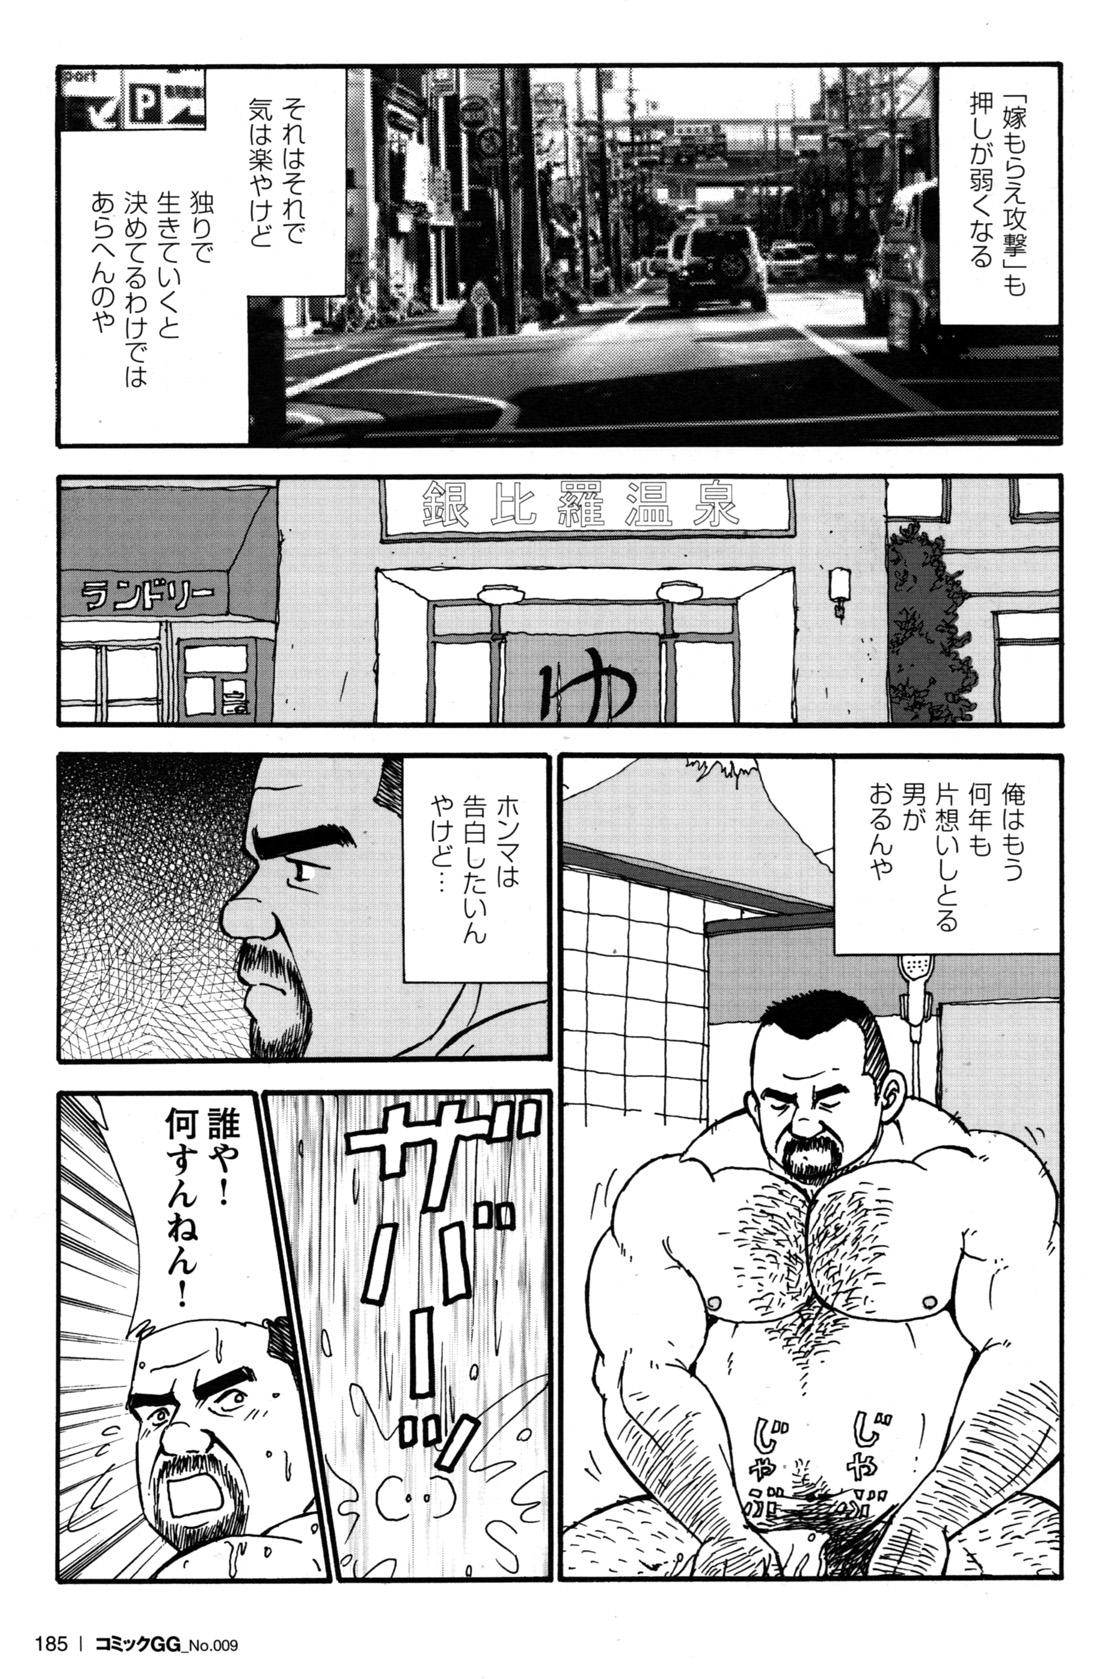 Comic G-men Gaho No.09 Gacchibi Zeme 168